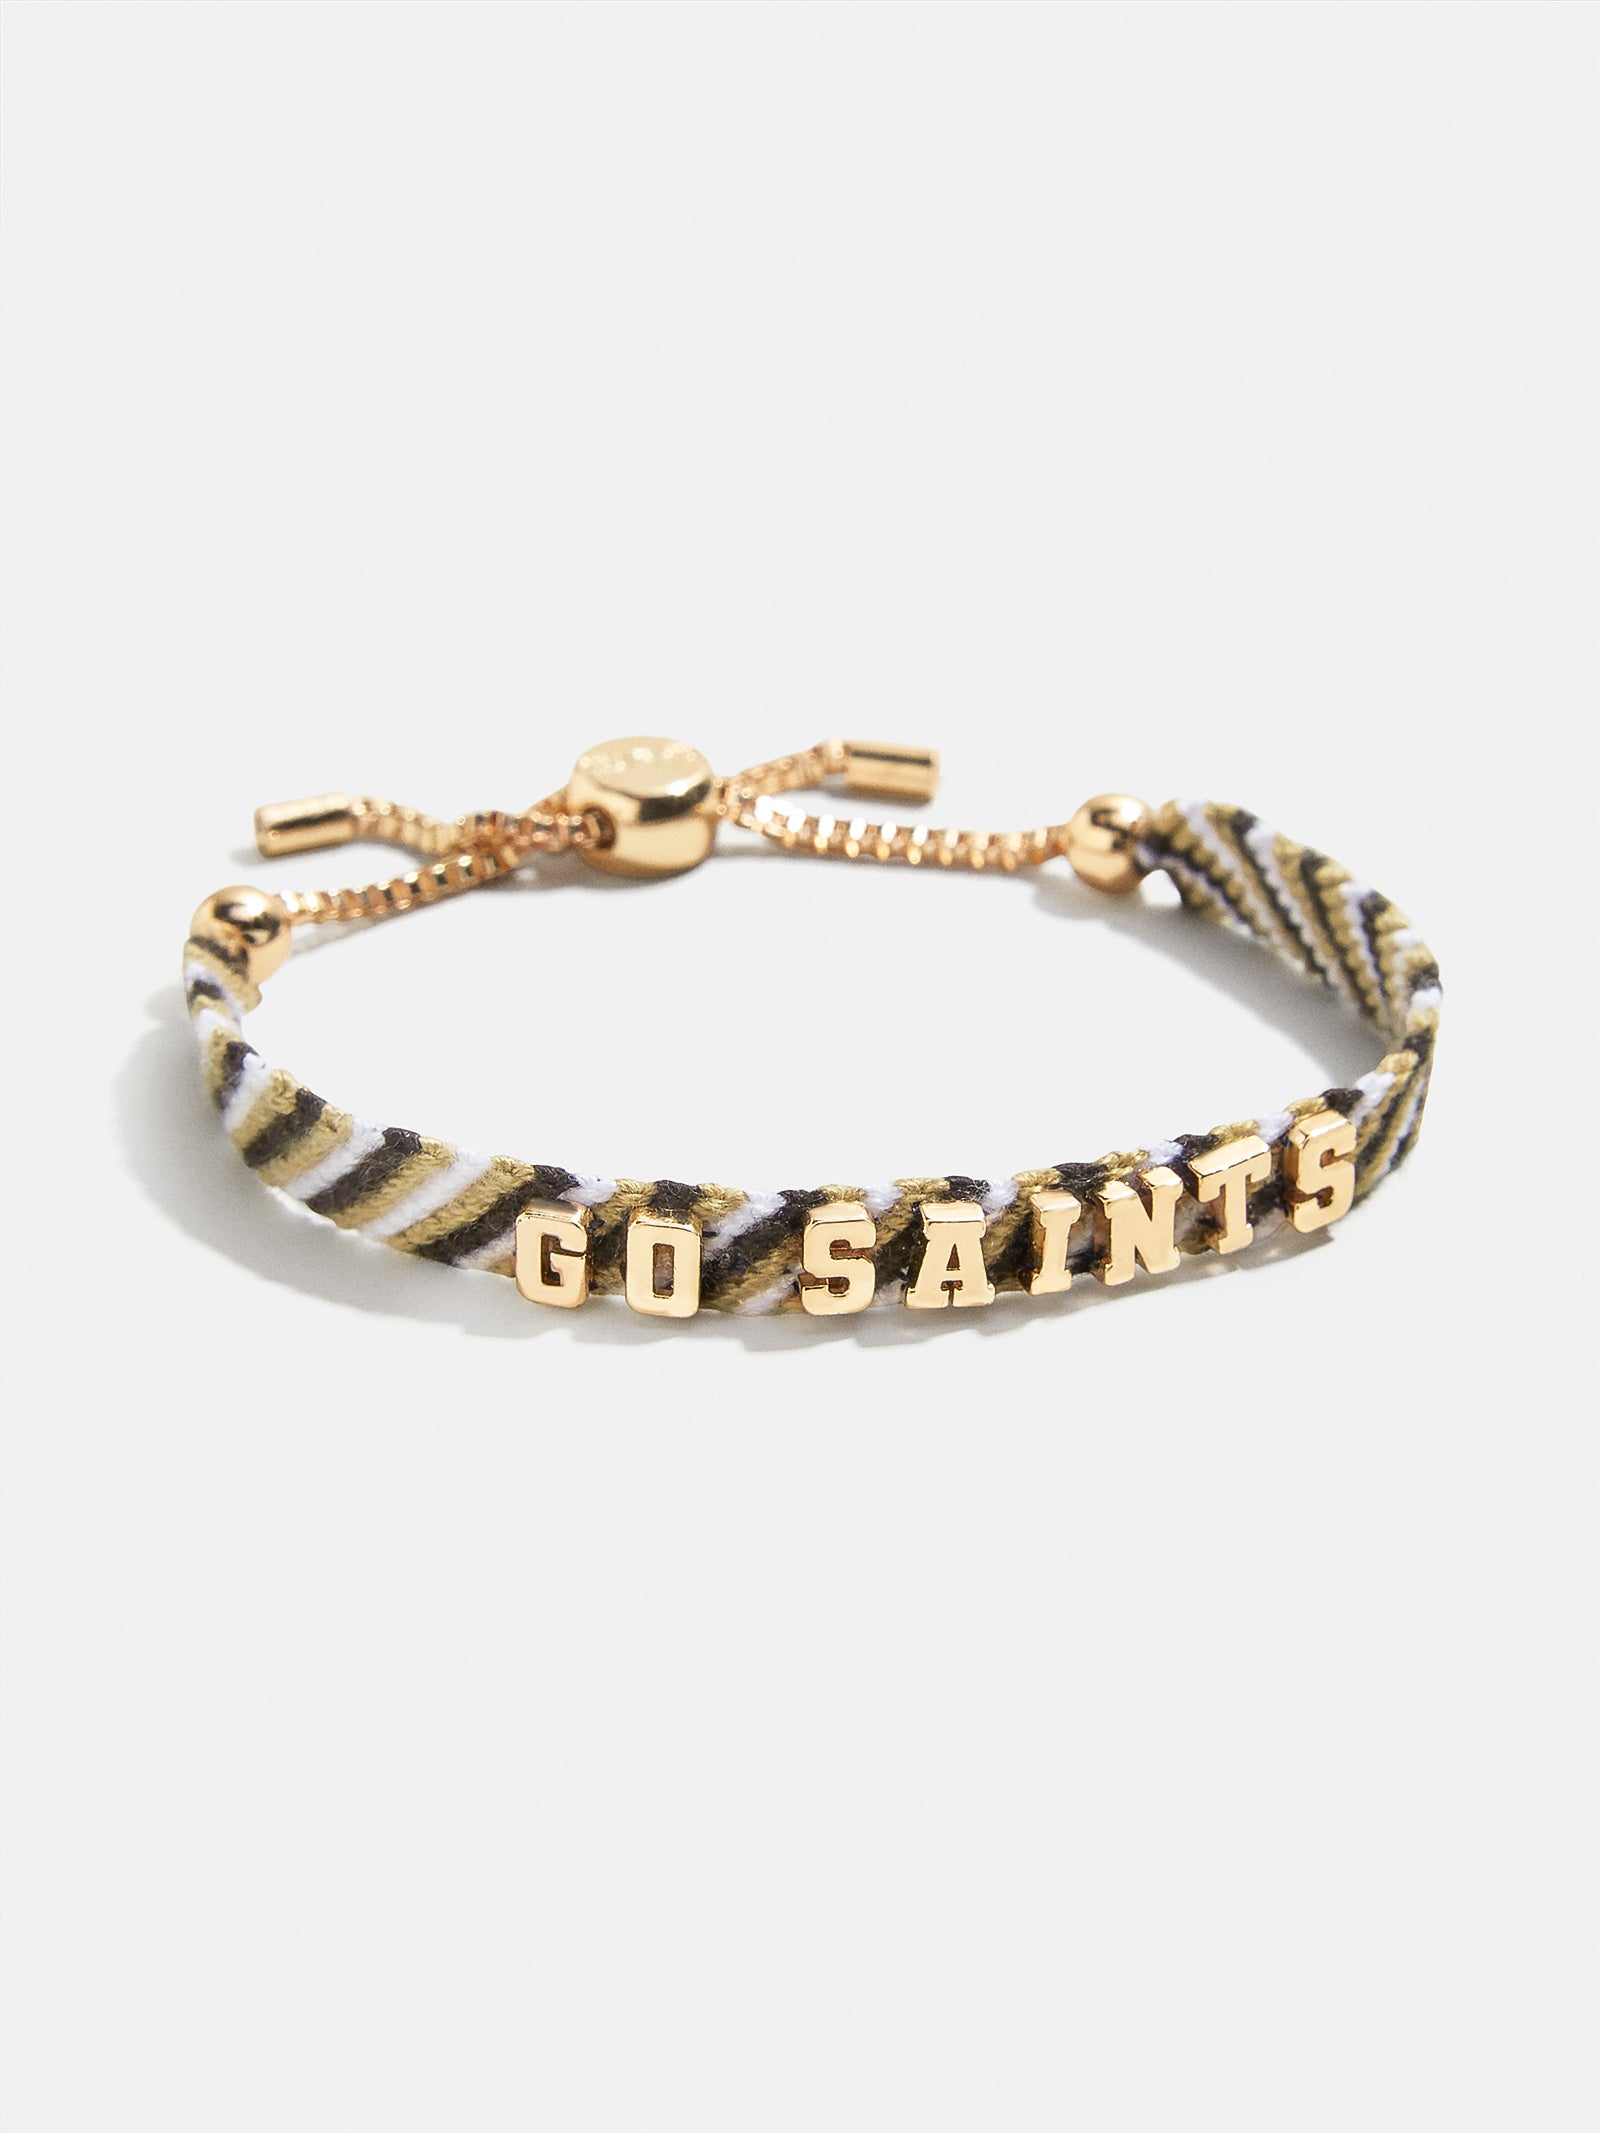 New Orleans Saints Bracelets 4 Pack Silicone - Sports Fan Shop